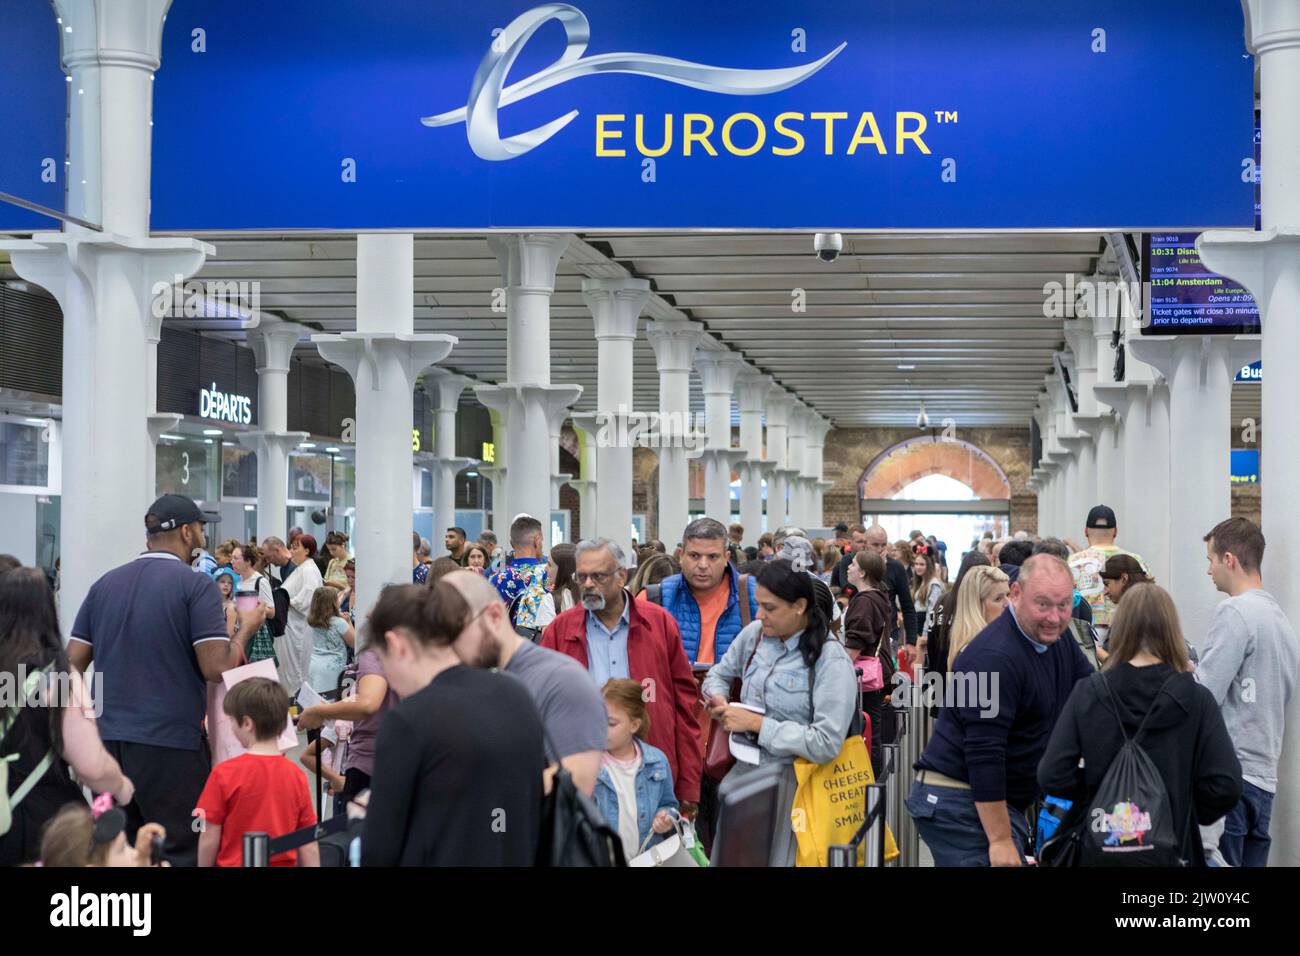 I vacanzieri hanno visto affollarsi la stazione di King’s Cross St. Pancras Eurostar durante il fine settimana delle vacanze in banca. Immagine scattata il 27th ago 2022. © Belinda Jiao Foto Stock